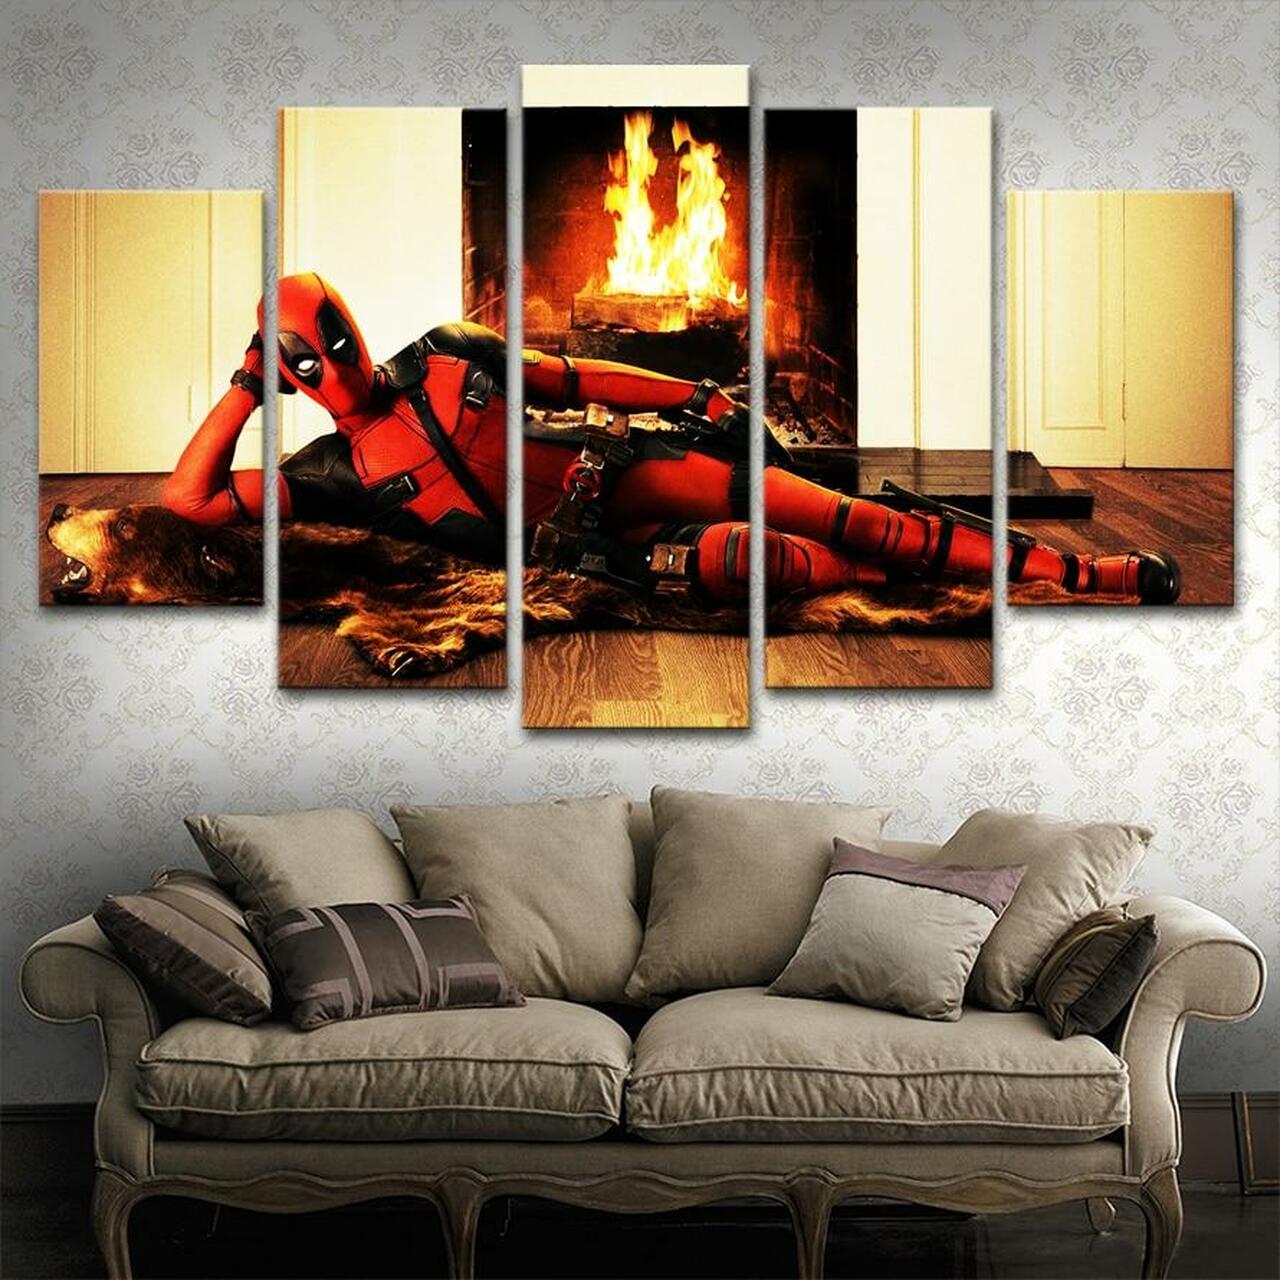 deadpool at fireplace 5 pices peinture sur toile impression sur toile toile art pour la dcoration intrieureznchg